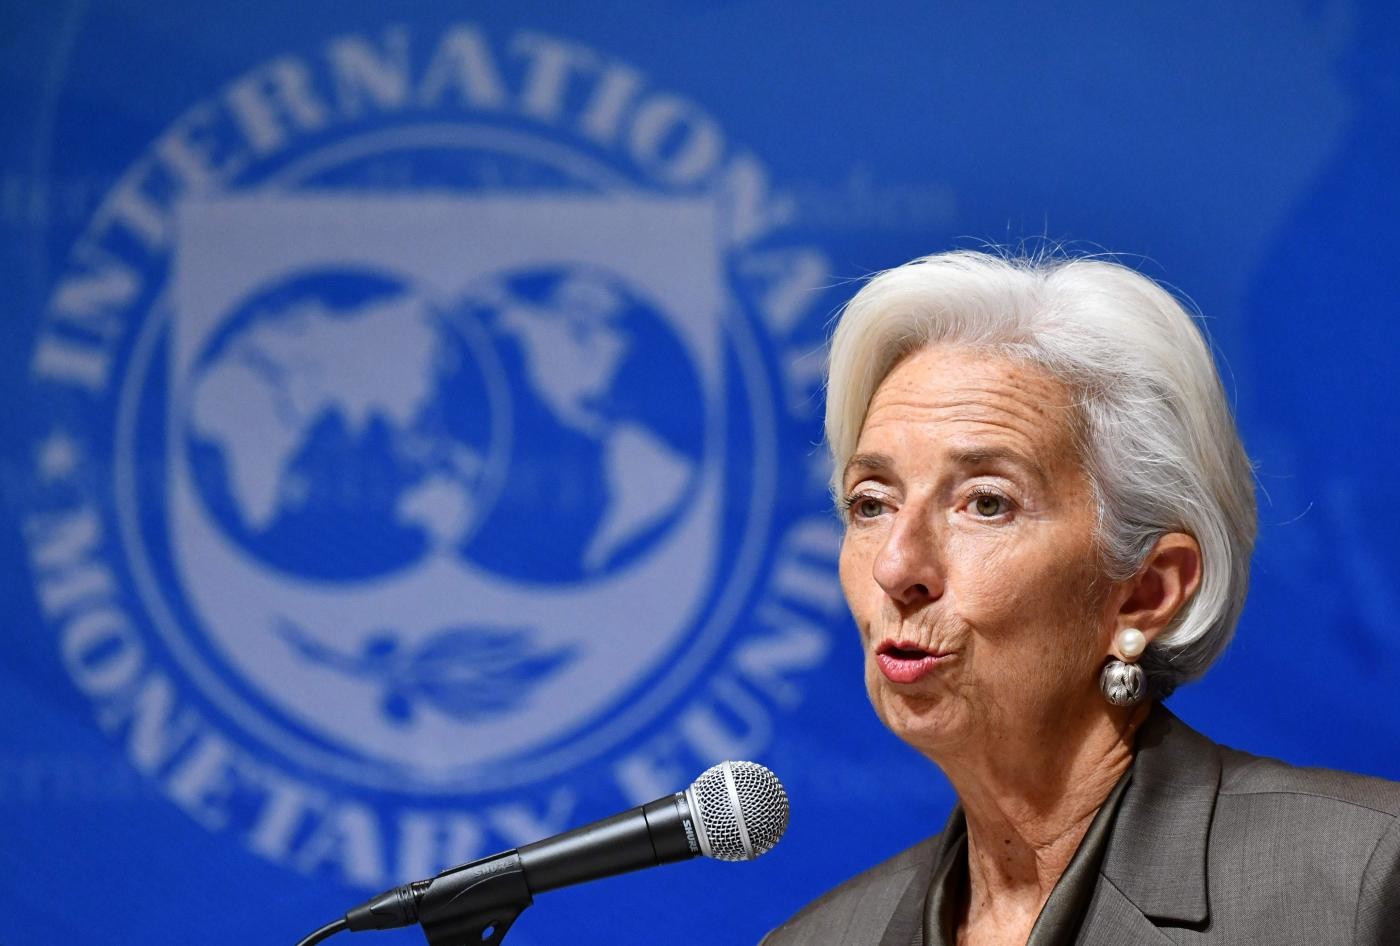 Il Fmi avverte l’Italia: “Pil sotto l’1% di crescita per 5 anni”. Tria: “Sottovalutata la capacità delle nostre politiche”